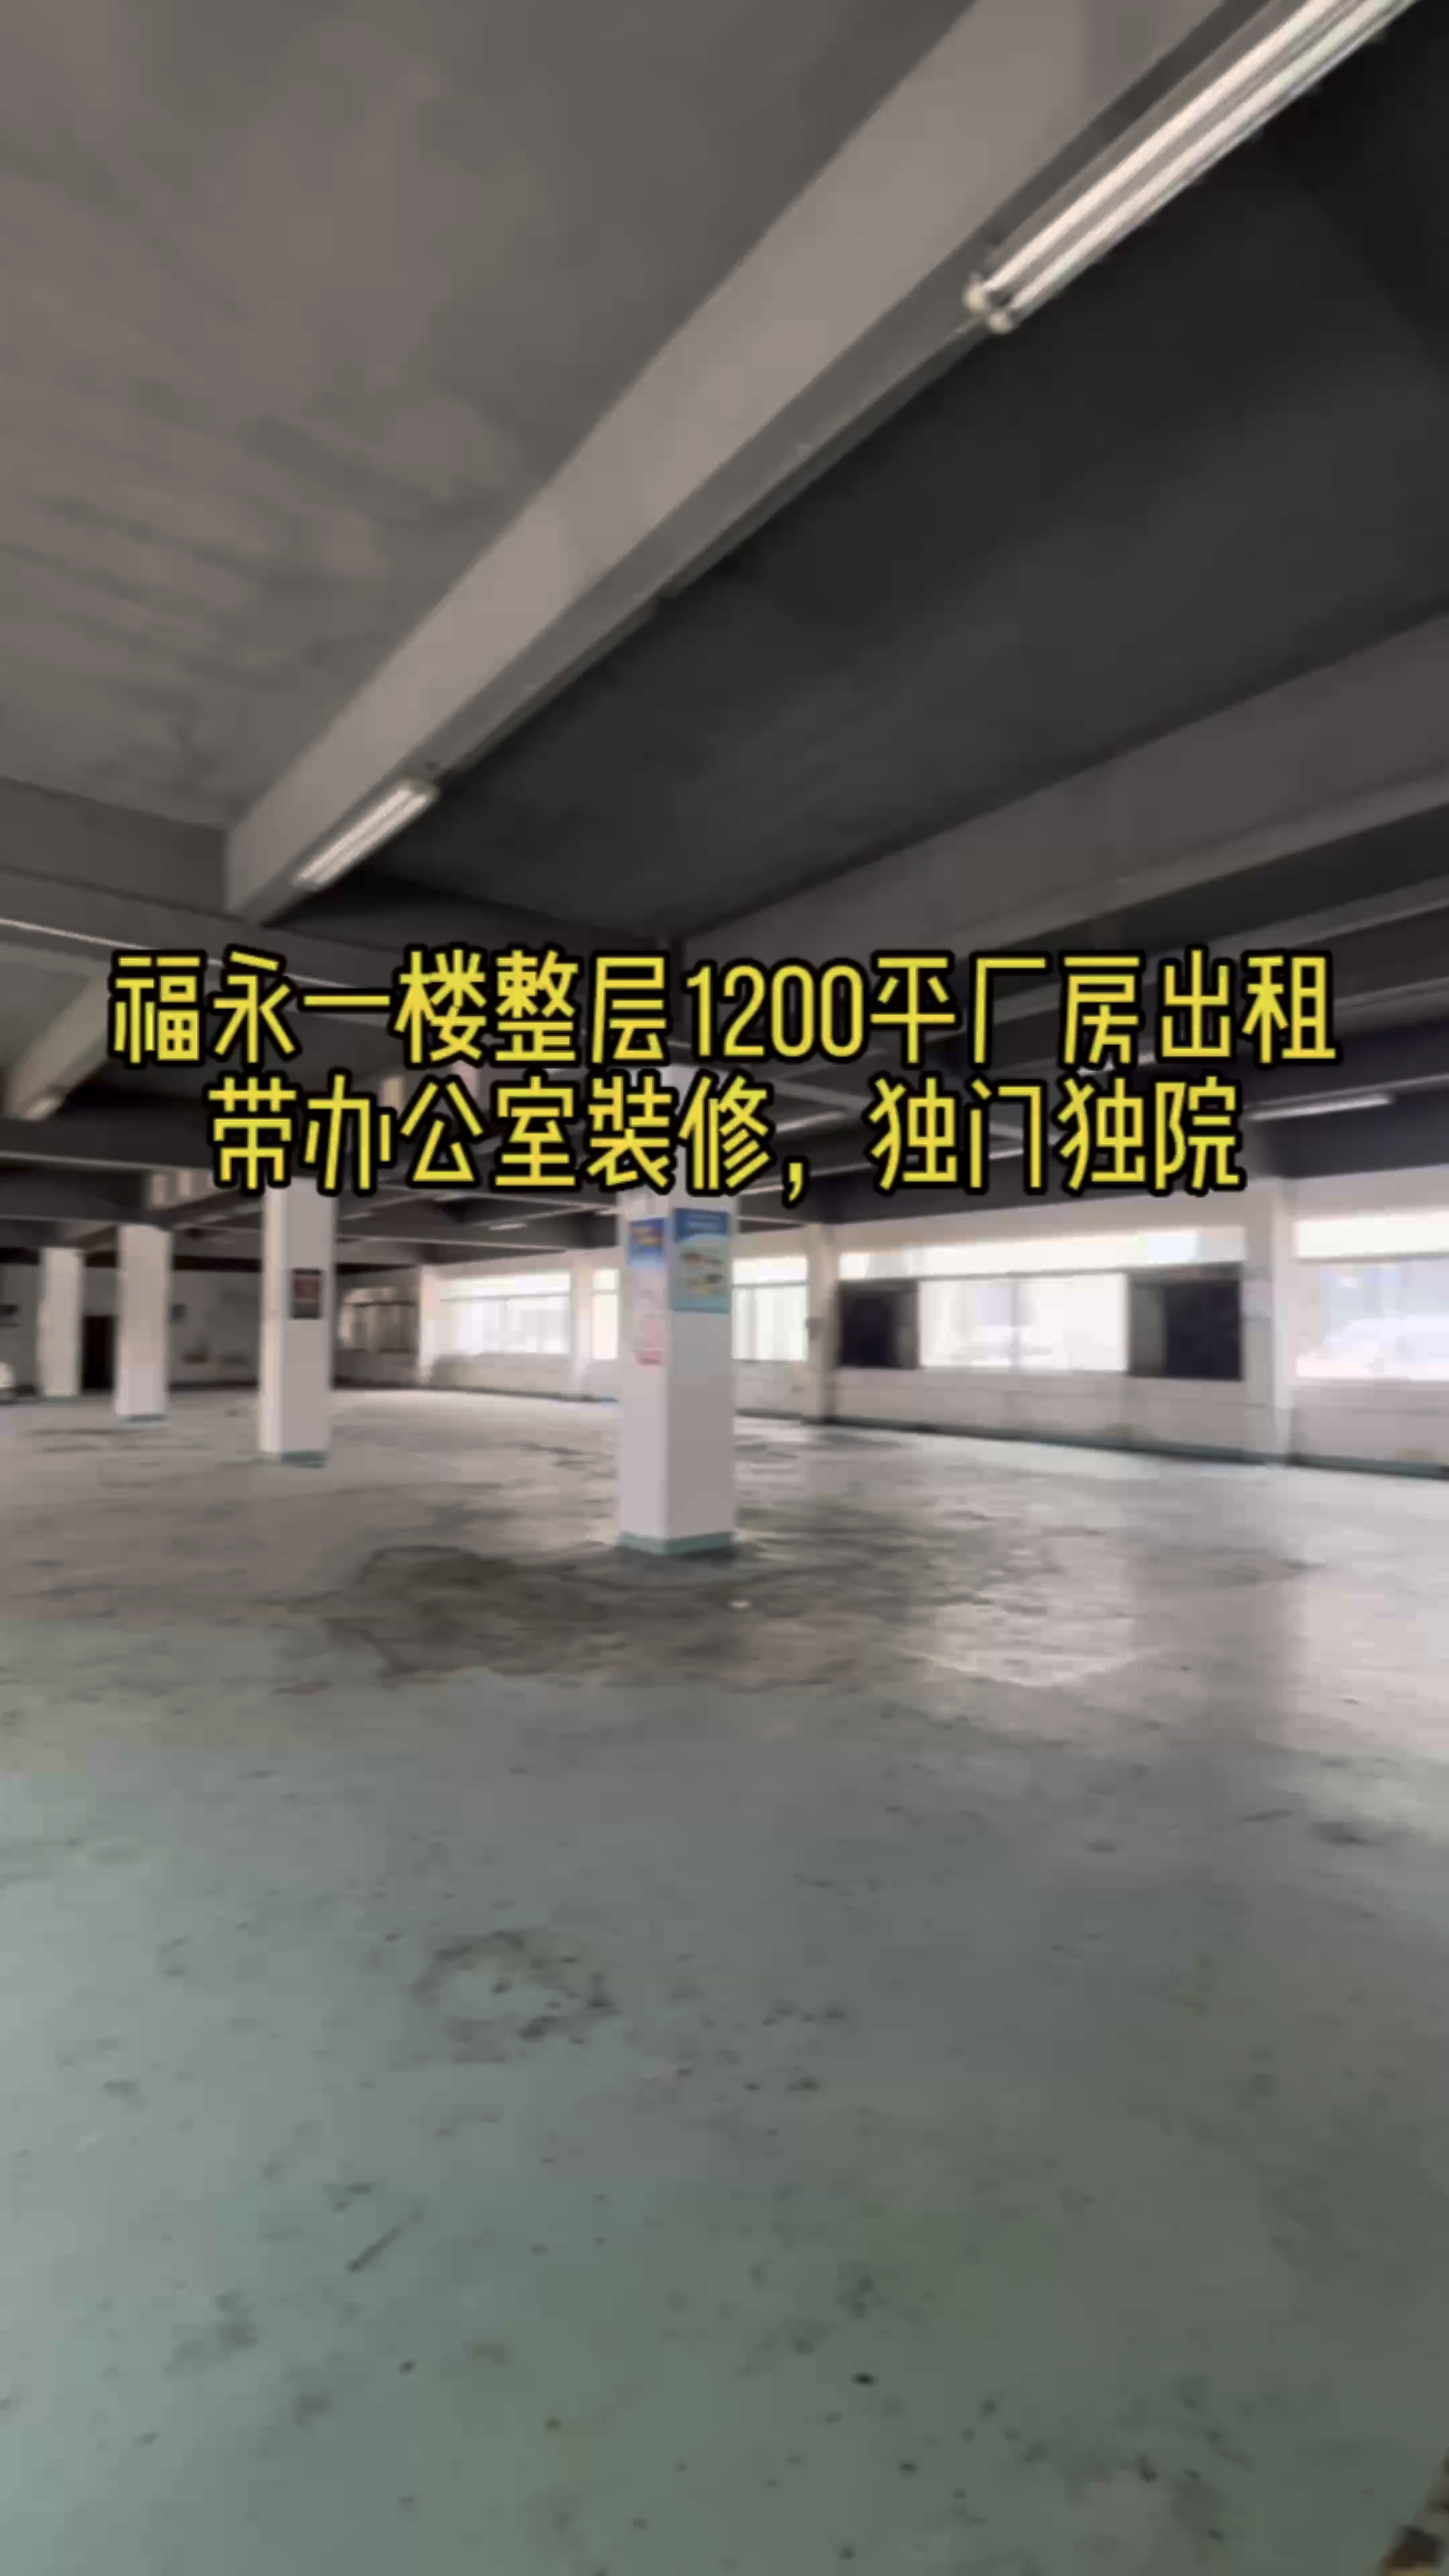 福永独门独院一楼1200平精装修厂房出租仓库出租低价出租可分